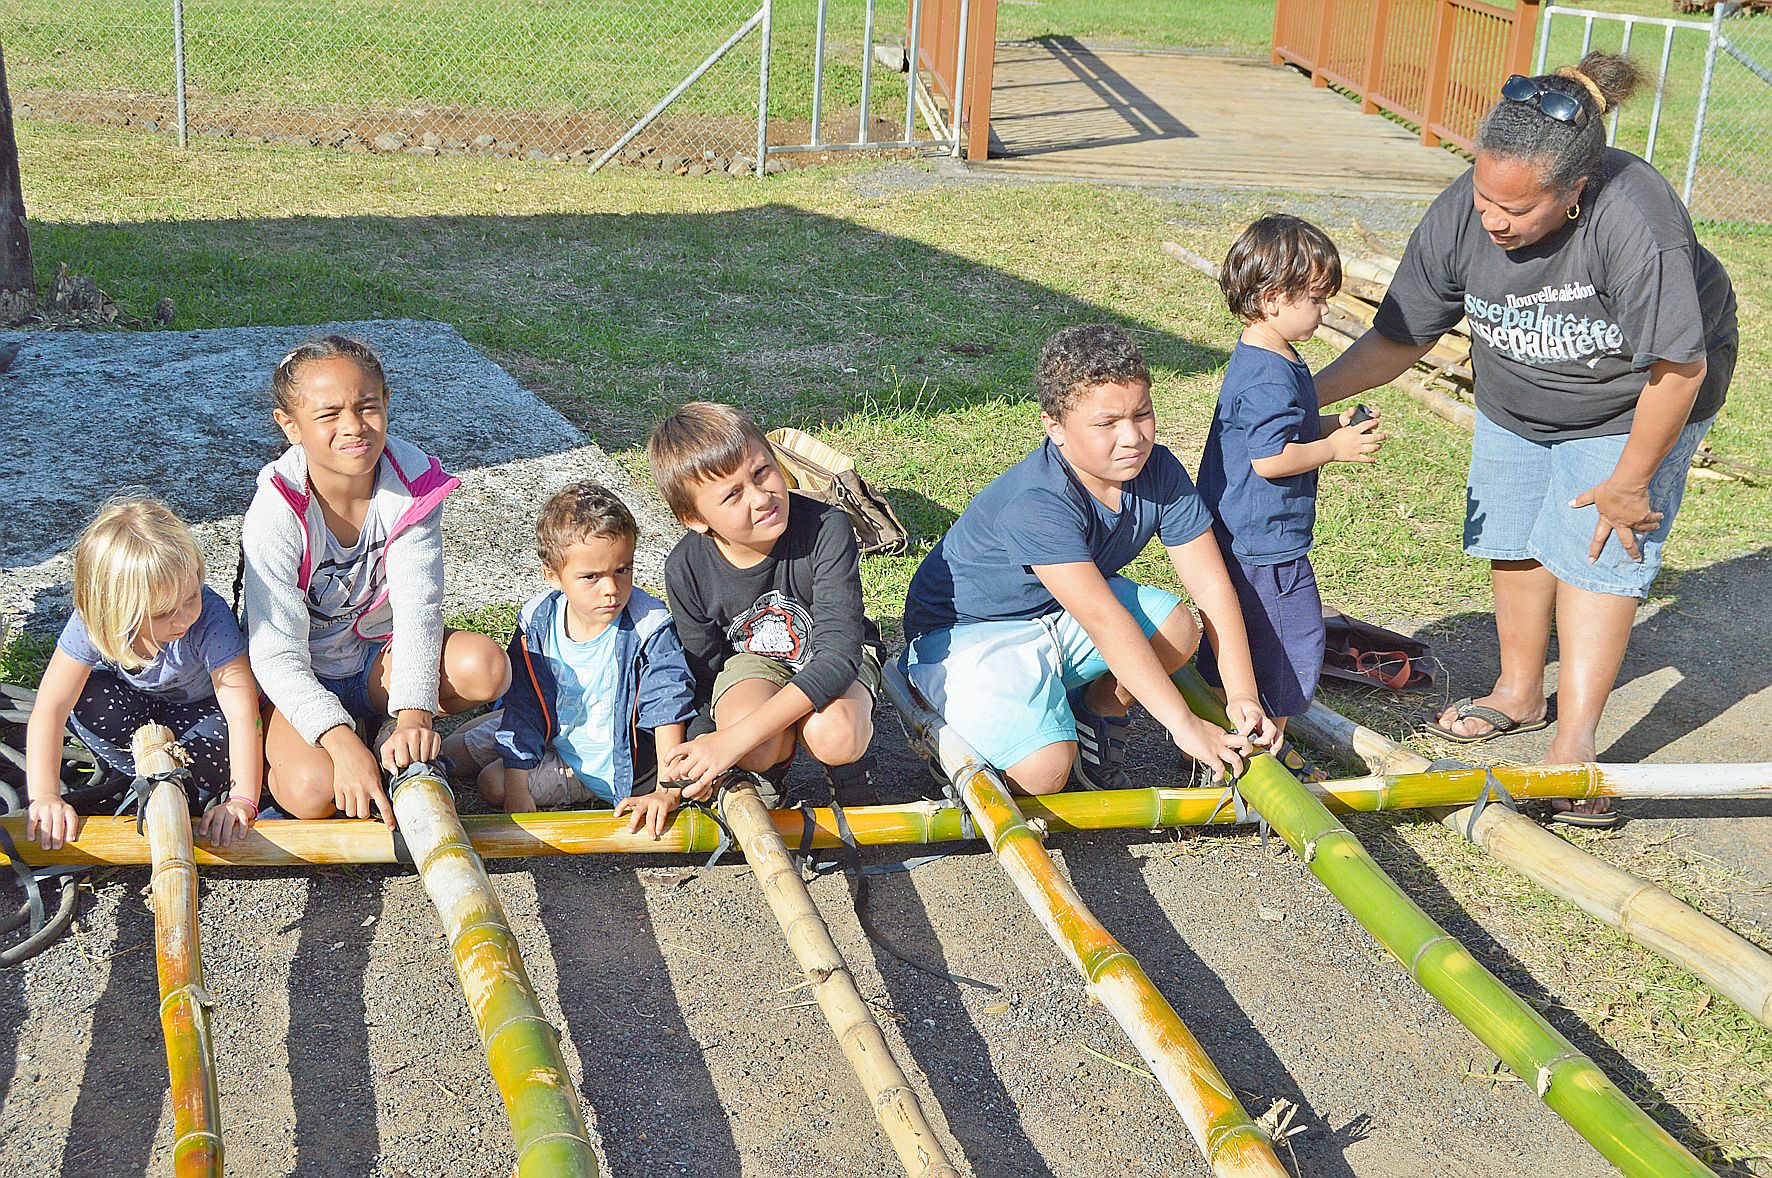 À l’aventure et à l’abordage ! Le thème des vacances au centre de loisirs Les Piroguiers de Plum a permis aux jeunes de se lancer dans la construction de radeaux en bambou. Vendredi, ils les mettront à l’eau pour une course qui sonnera la fin des vacances